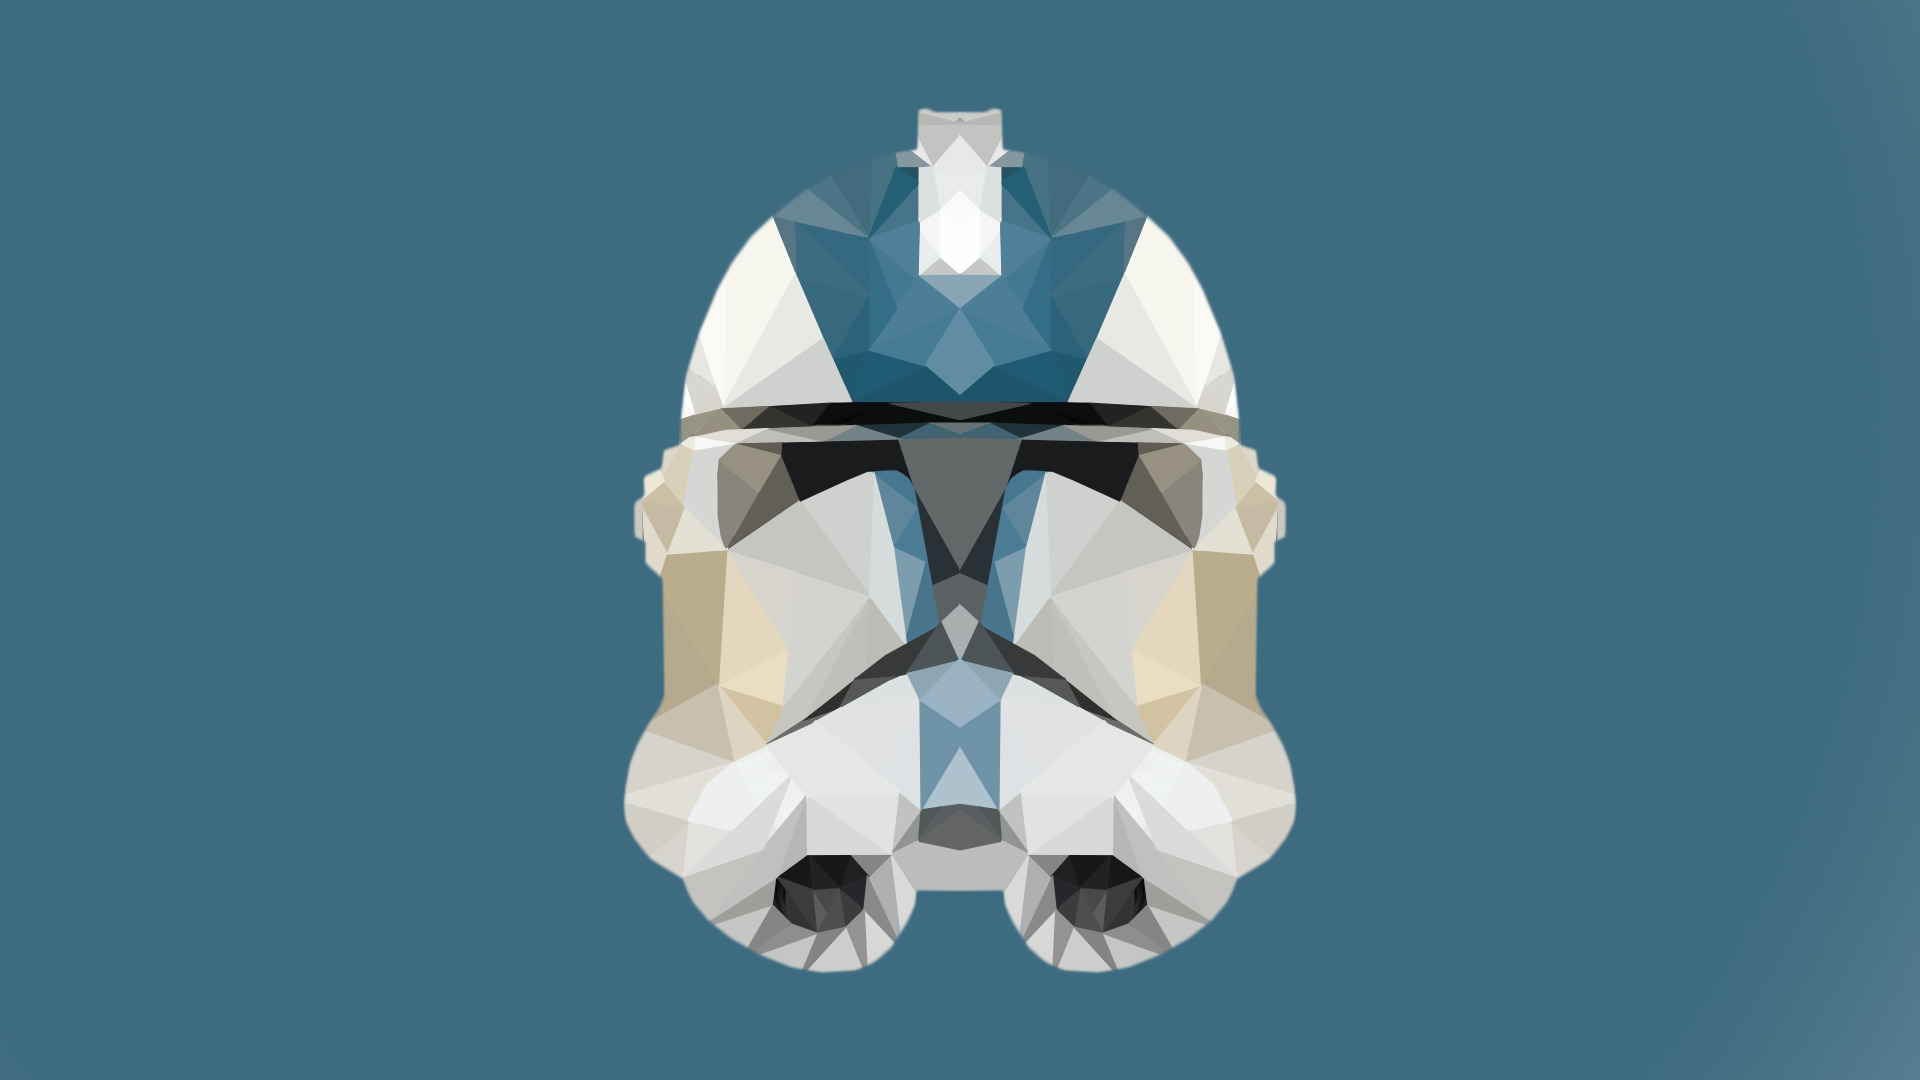 Star Wars, Stormtrooper, Minimalism, Simple Background, Simple